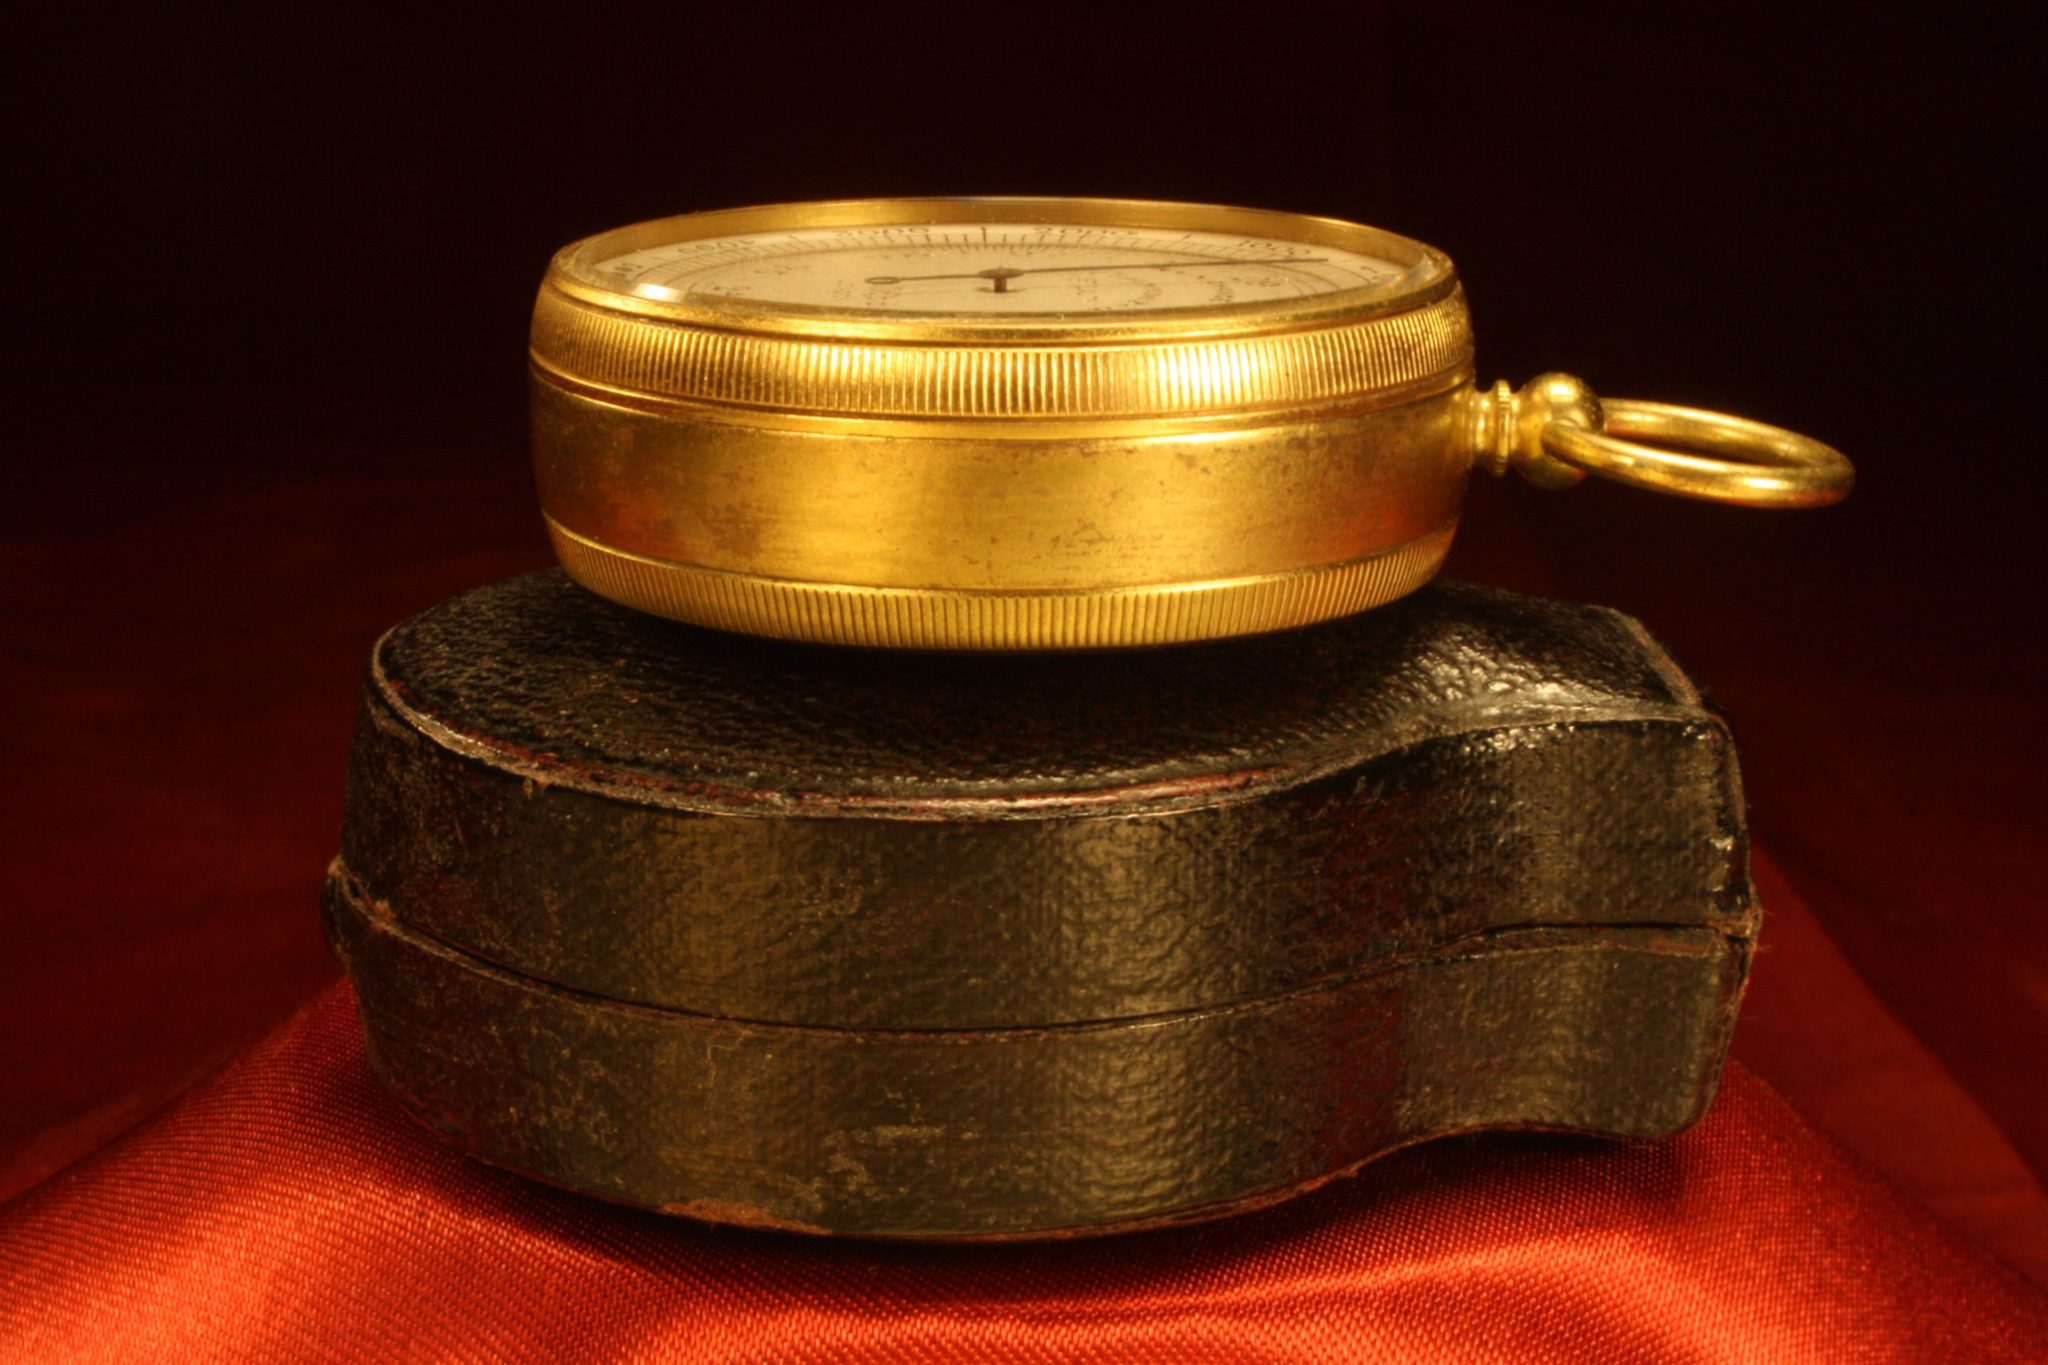 Image of Dollond Pocket Barometer